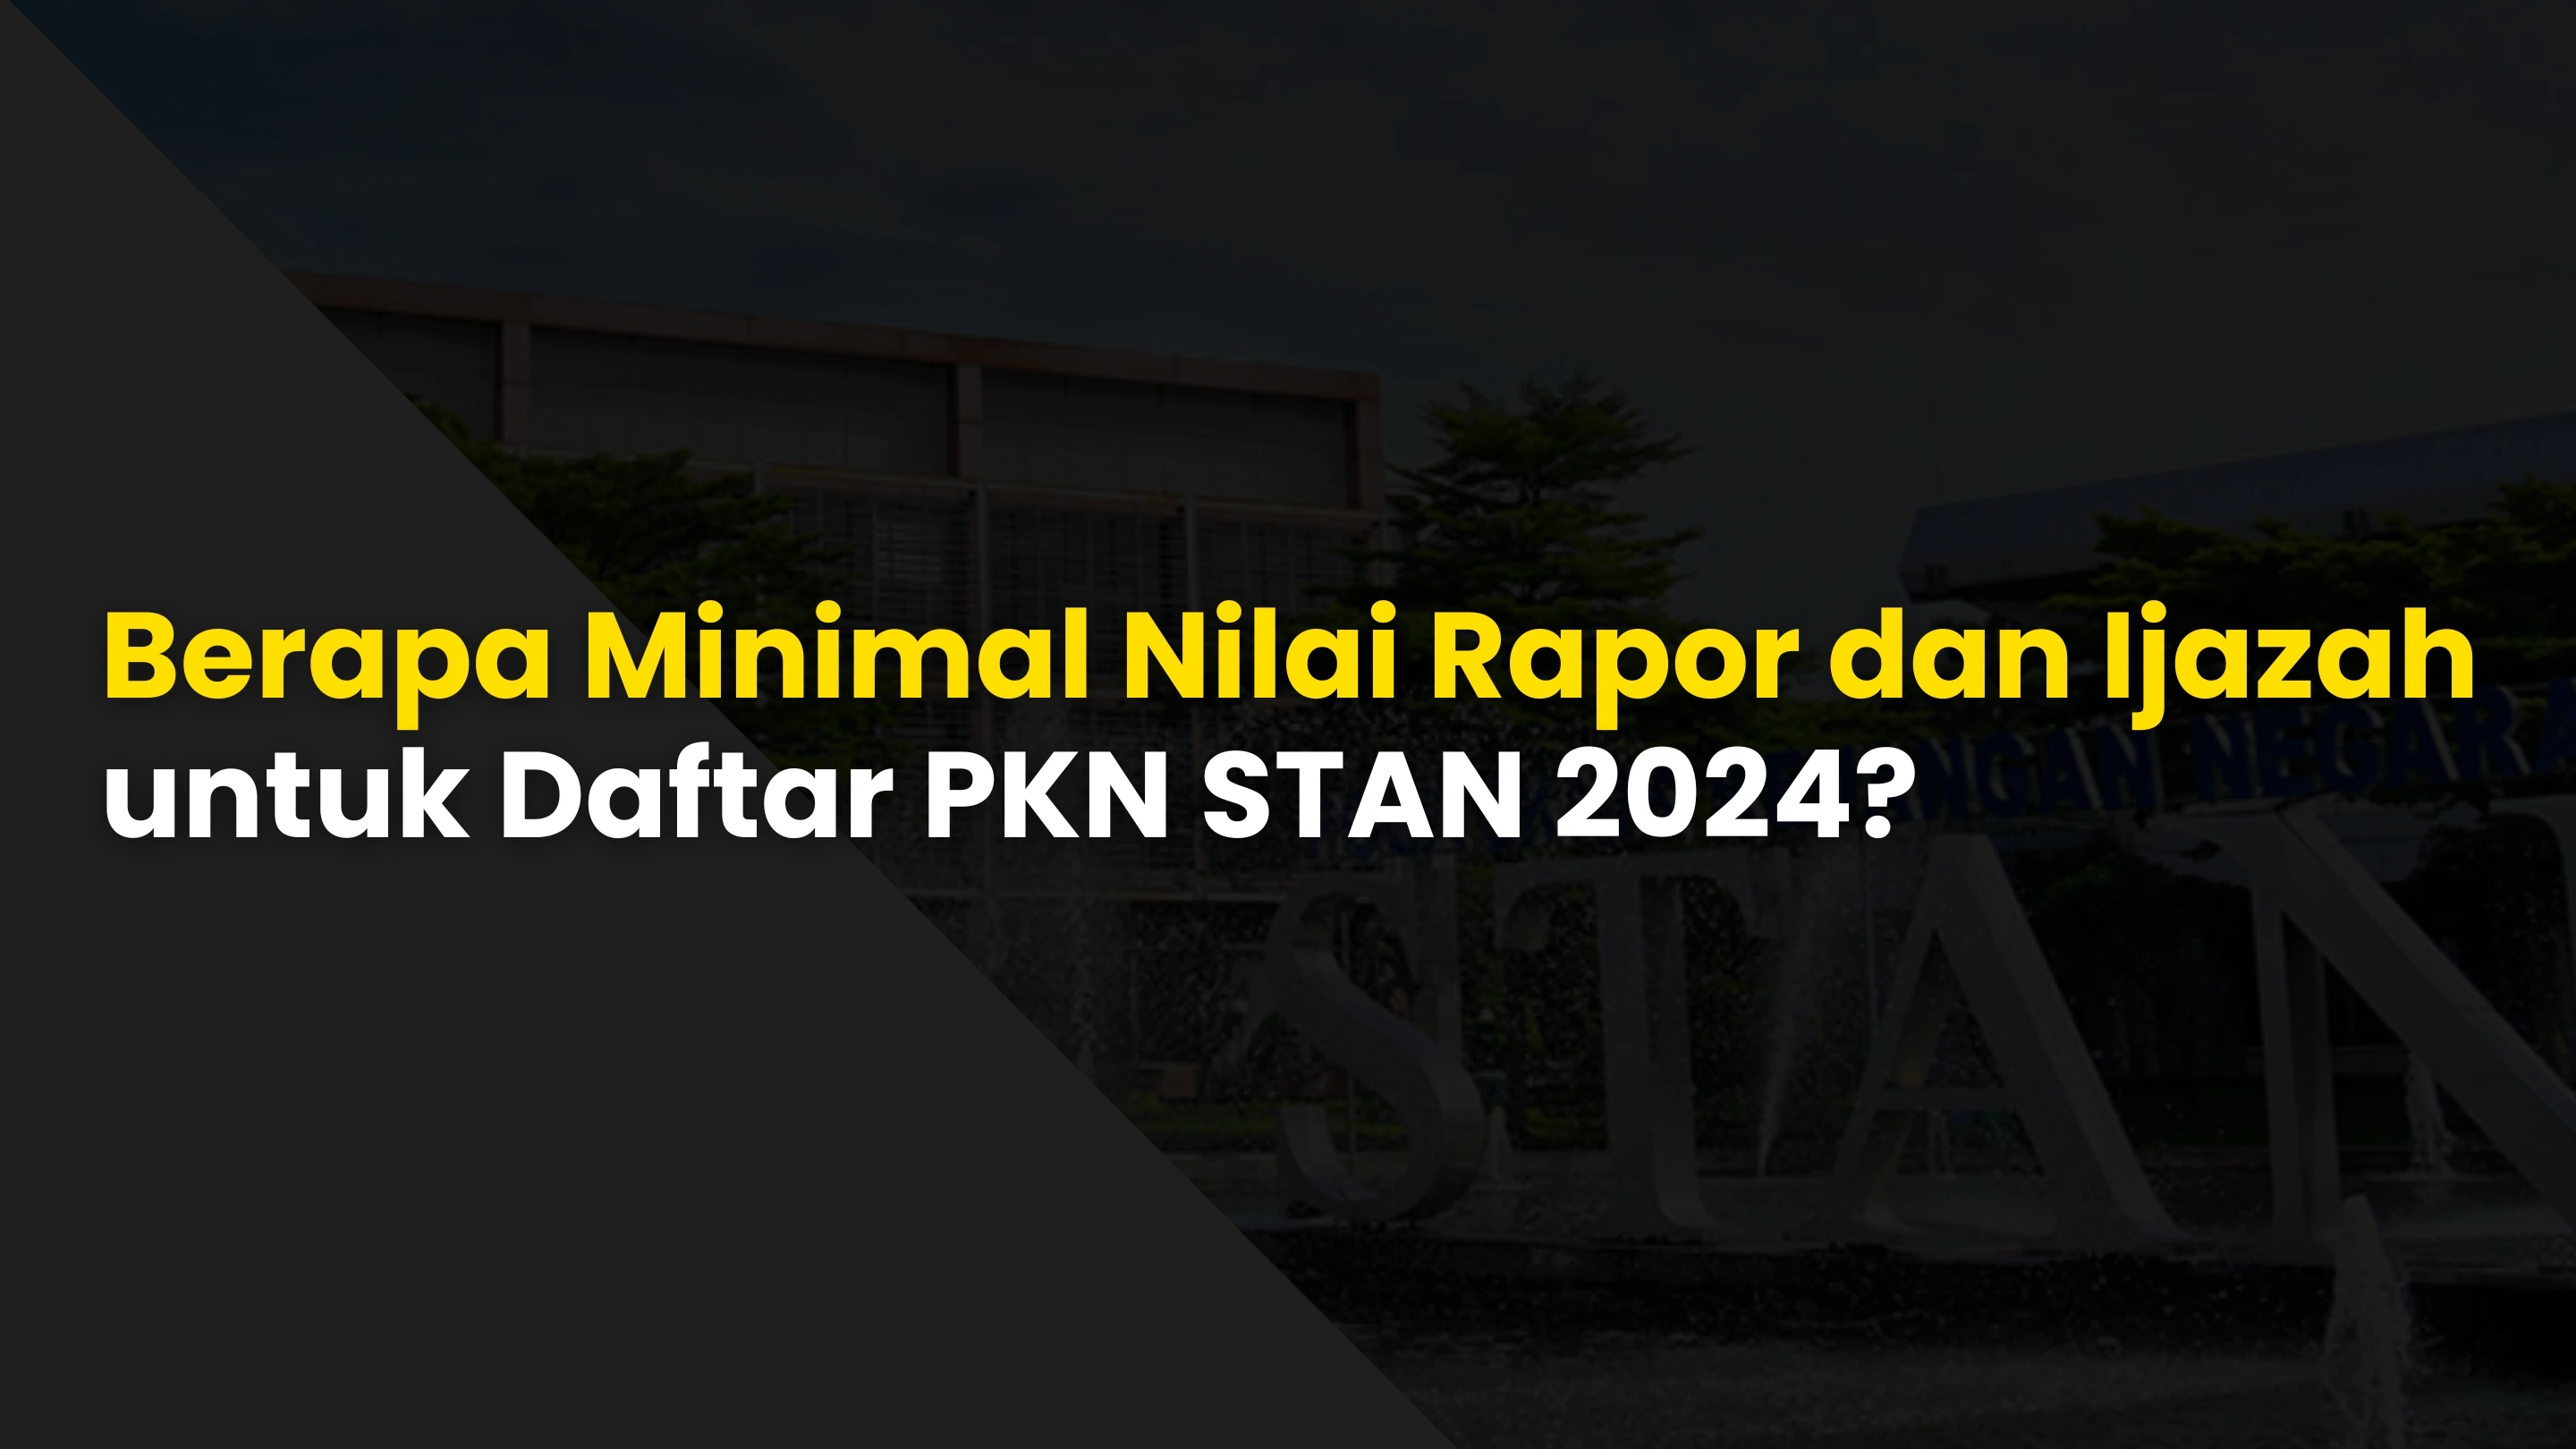 Berapa Minimal Nilai Rapor dan Ijazah untuk Daftar PKN STAN 2024?